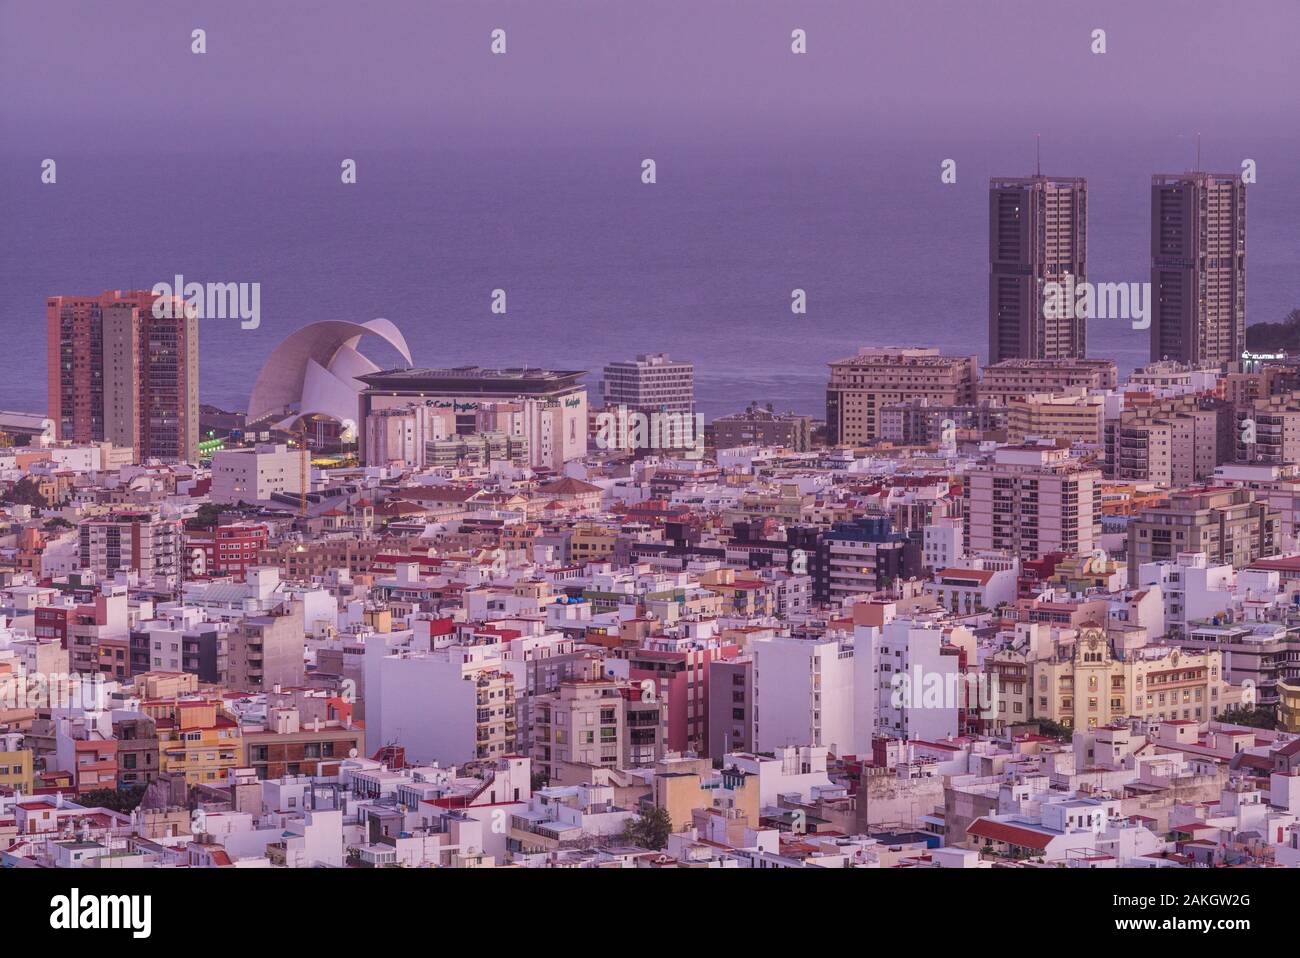 L'Espagne, Iles Canaries, Tenerife, l'île Santa Cruz de Tenerife, augmentation de la vue de la ville et de l'Auditorium de Santa Cruz conçu par l'architecte Santiago Calatrava, dusk Banque D'Images